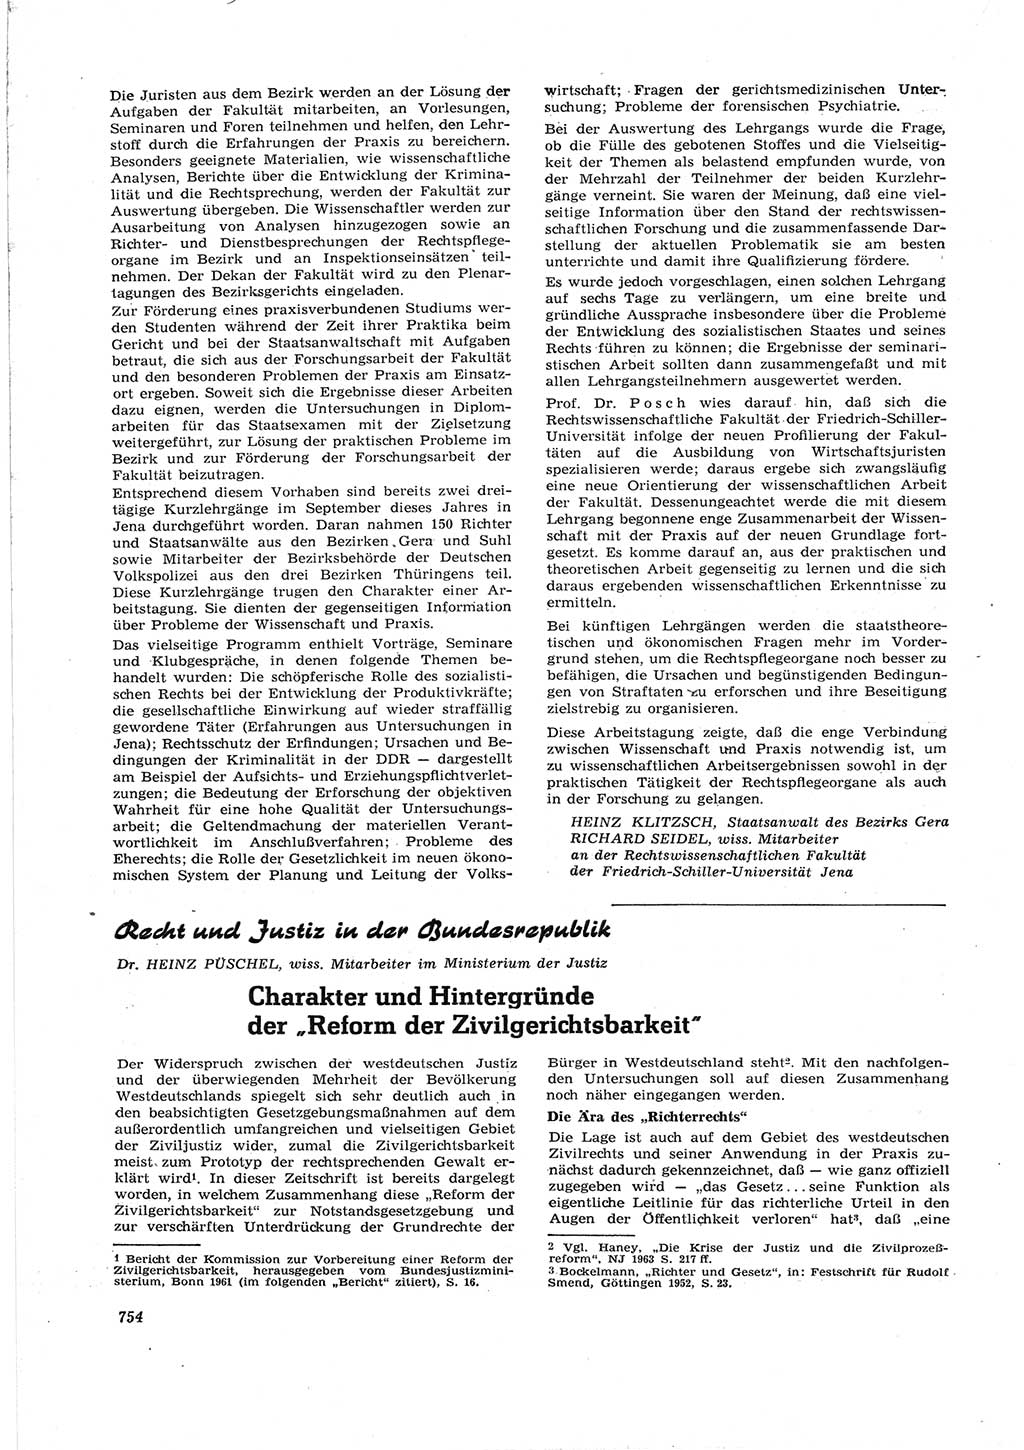 Neue Justiz (NJ), Zeitschrift für Recht und Rechtswissenschaft [Deutsche Demokratische Republik (DDR)], 17. Jahrgang 1963, Seite 754 (NJ DDR 1963, S. 754)